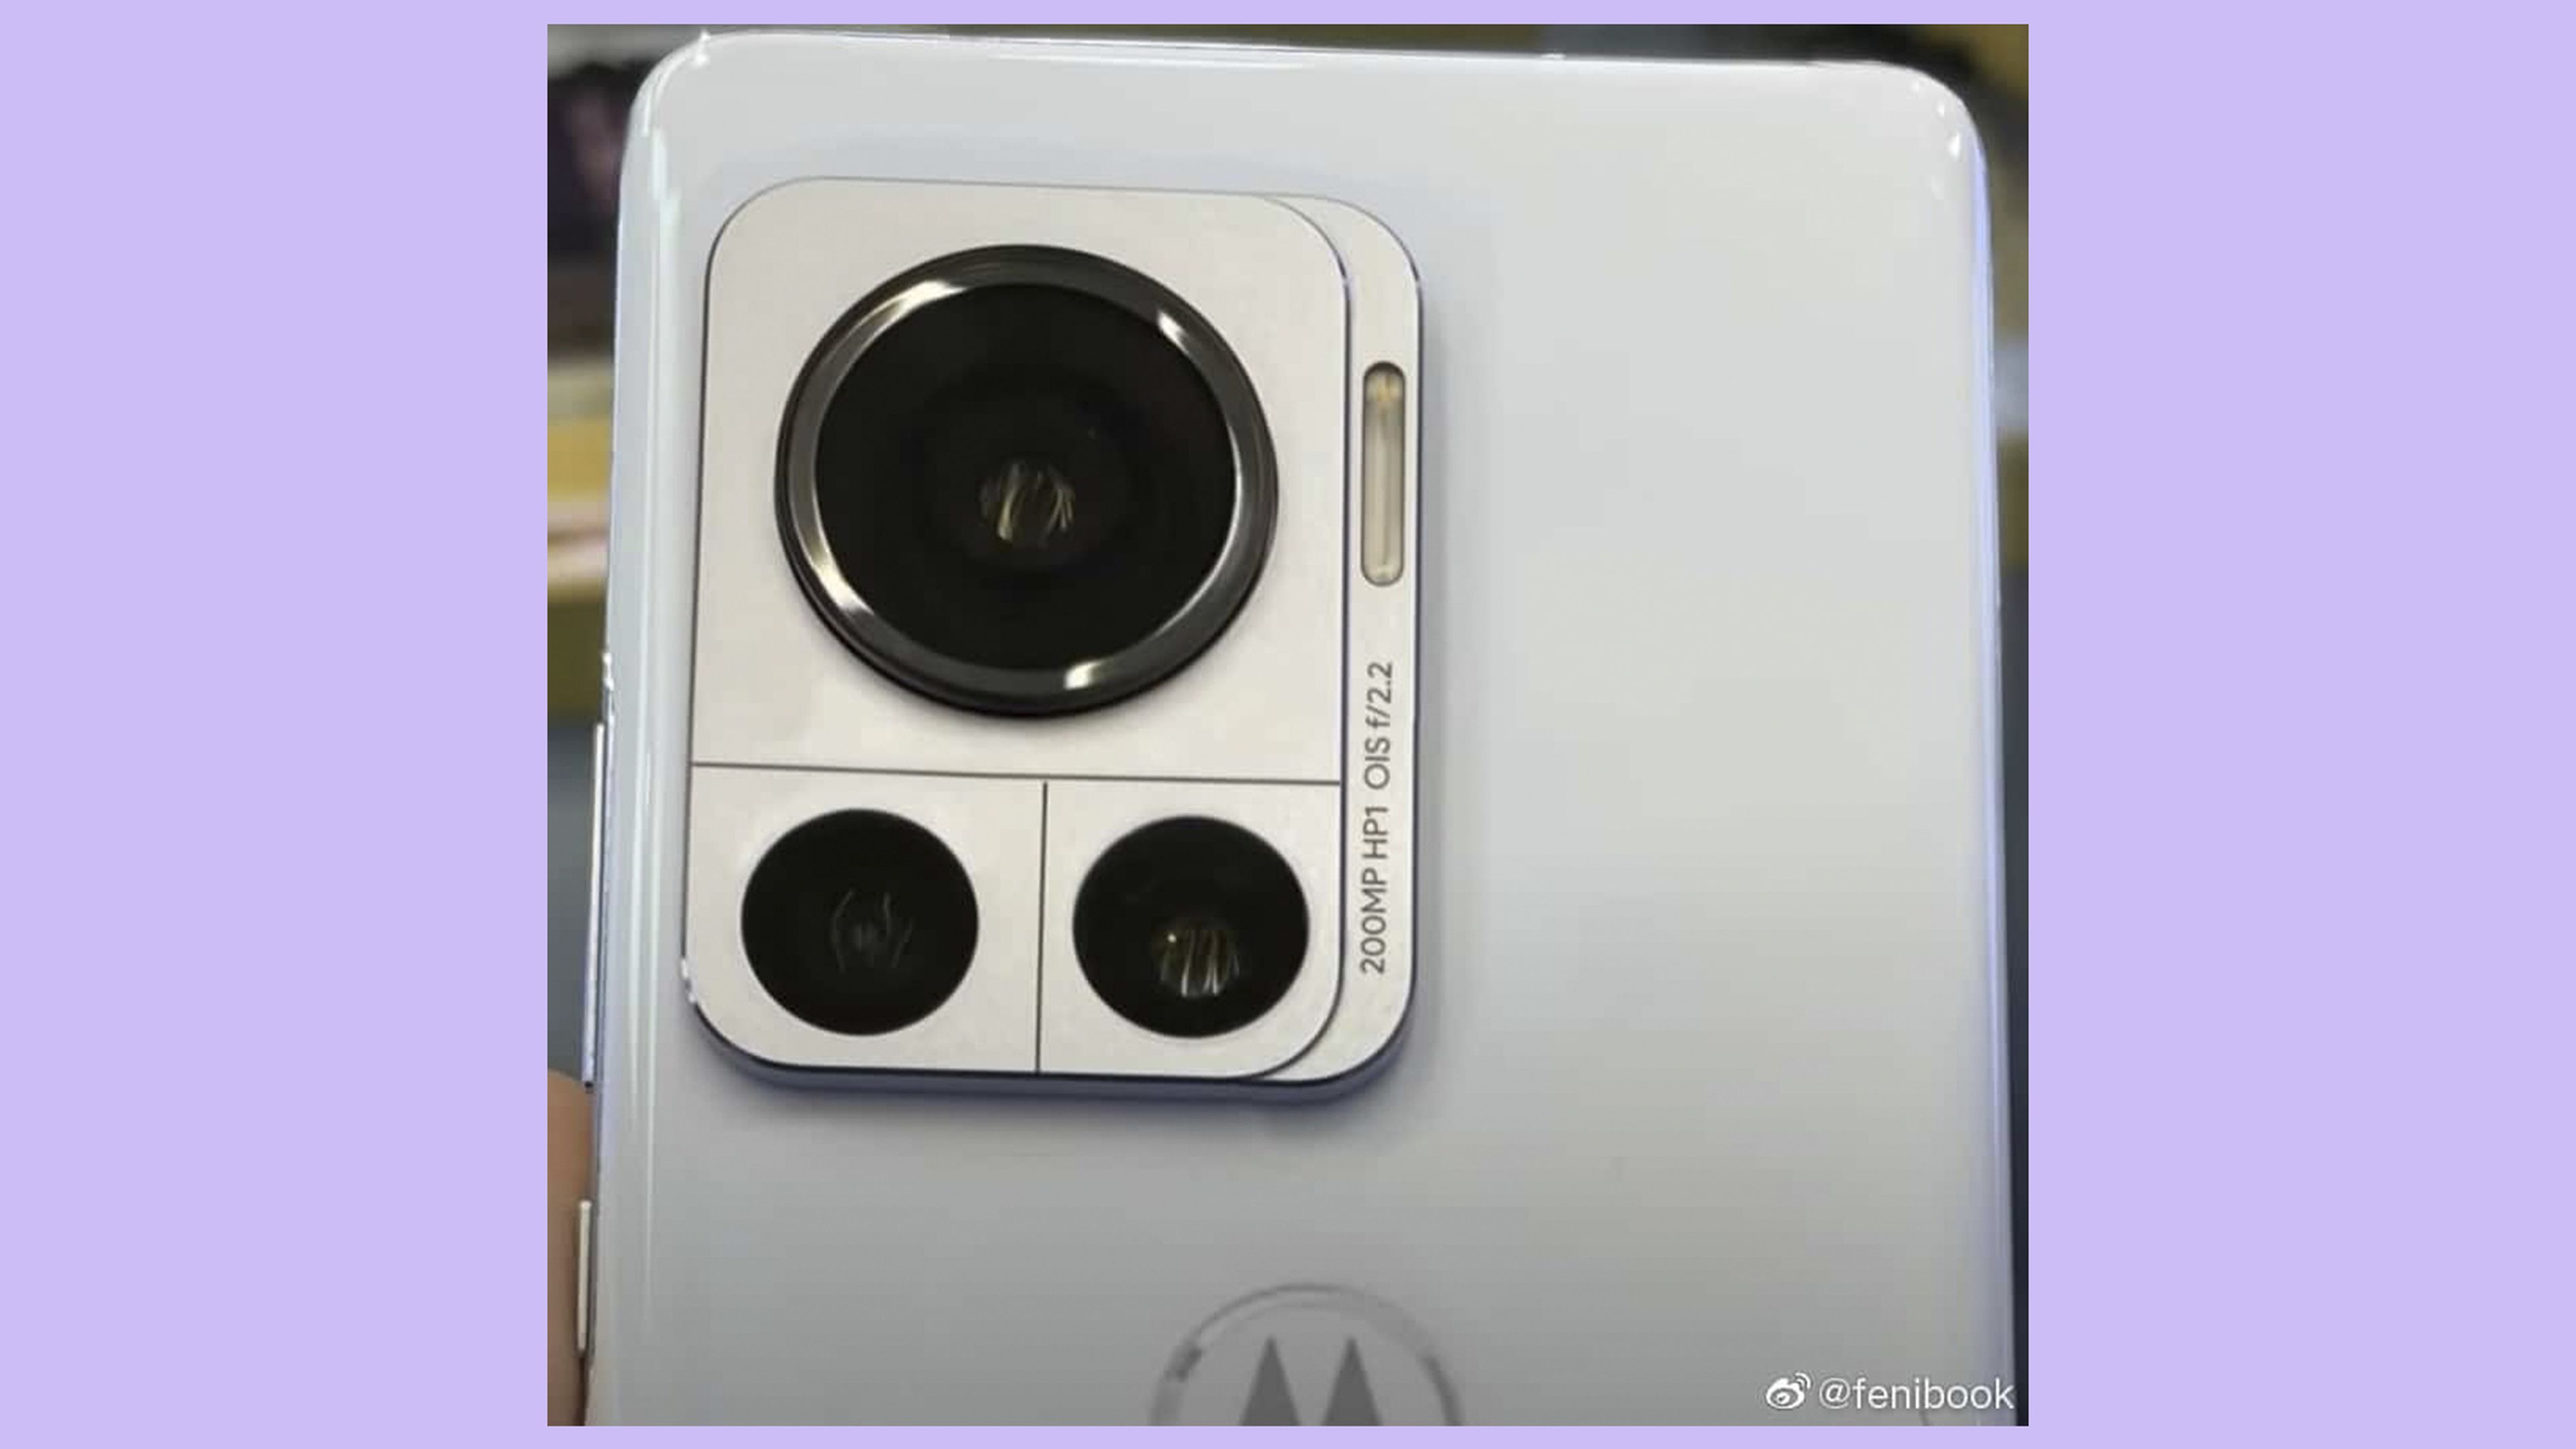 Filtrada la primera imagen del módulo de cámaras del Motorola que estrenará el primer sensor de 200 megapíxeles